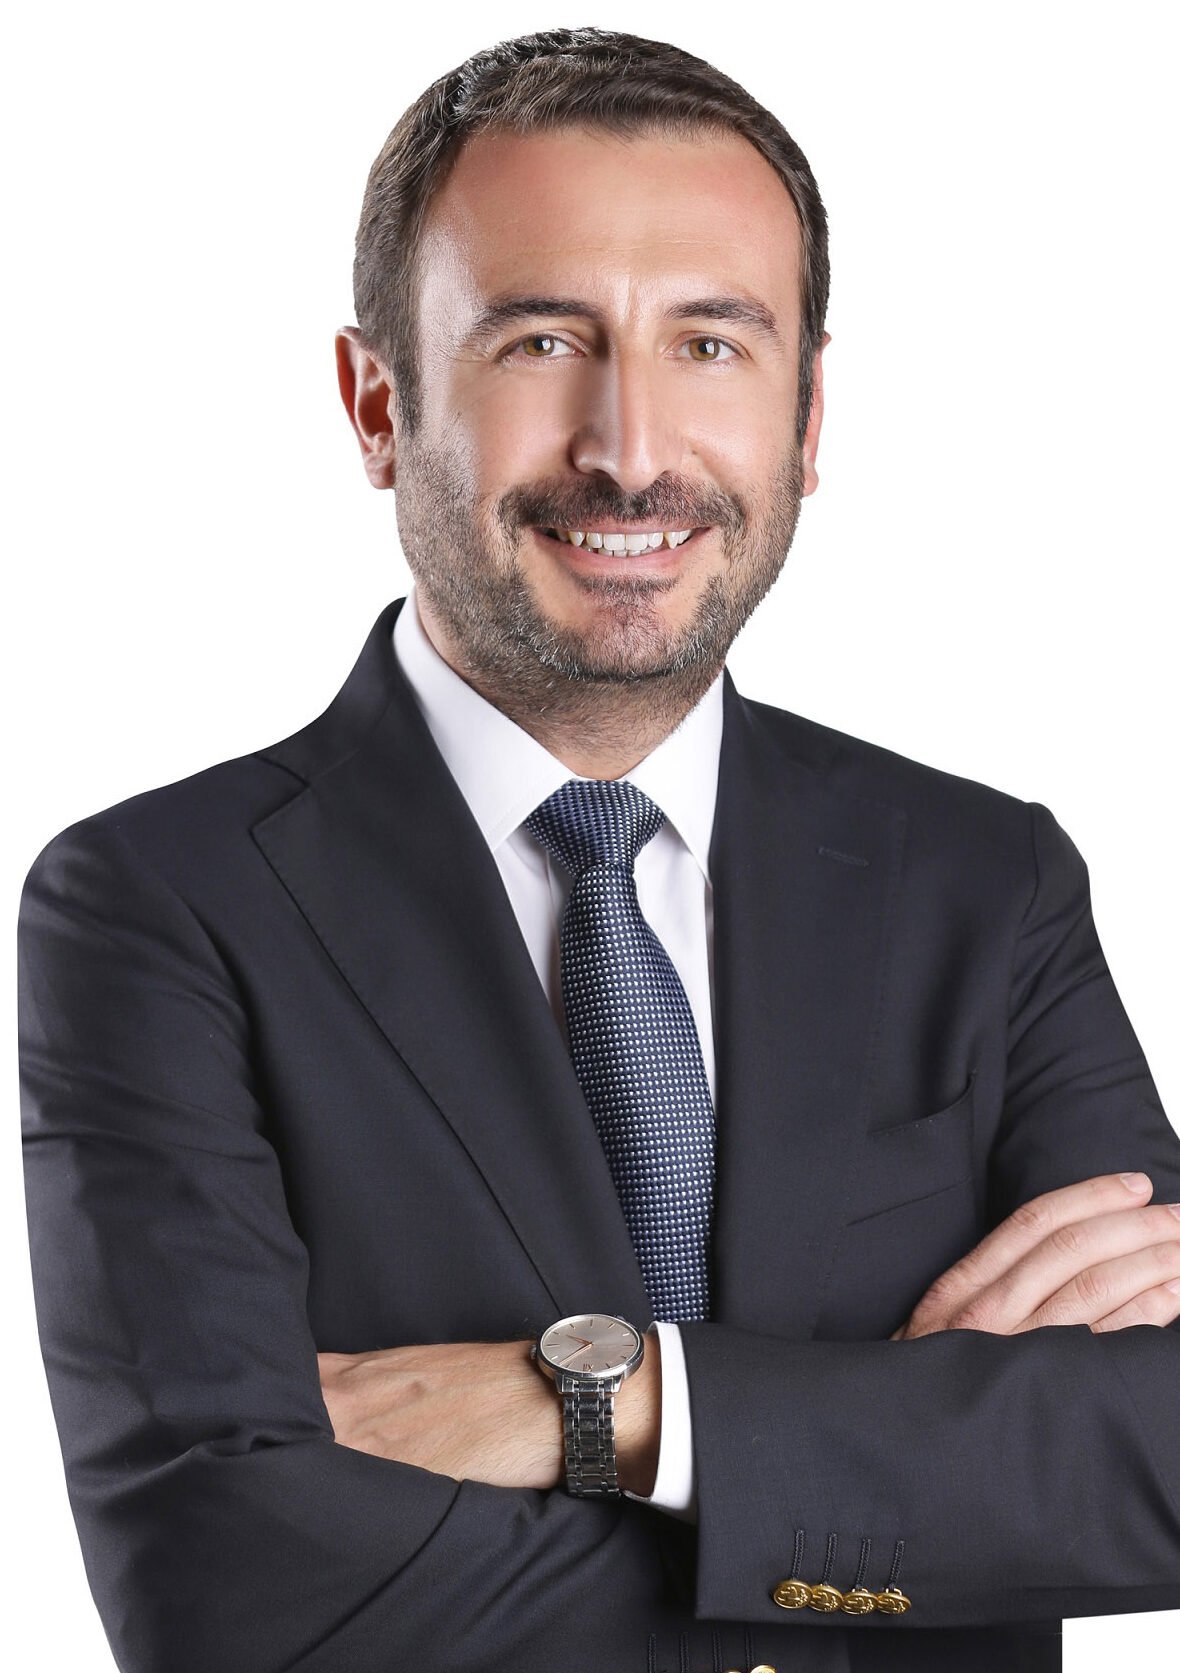 Bridgestone MEA appoints Gurhan Cevikel as new Head of Marketing